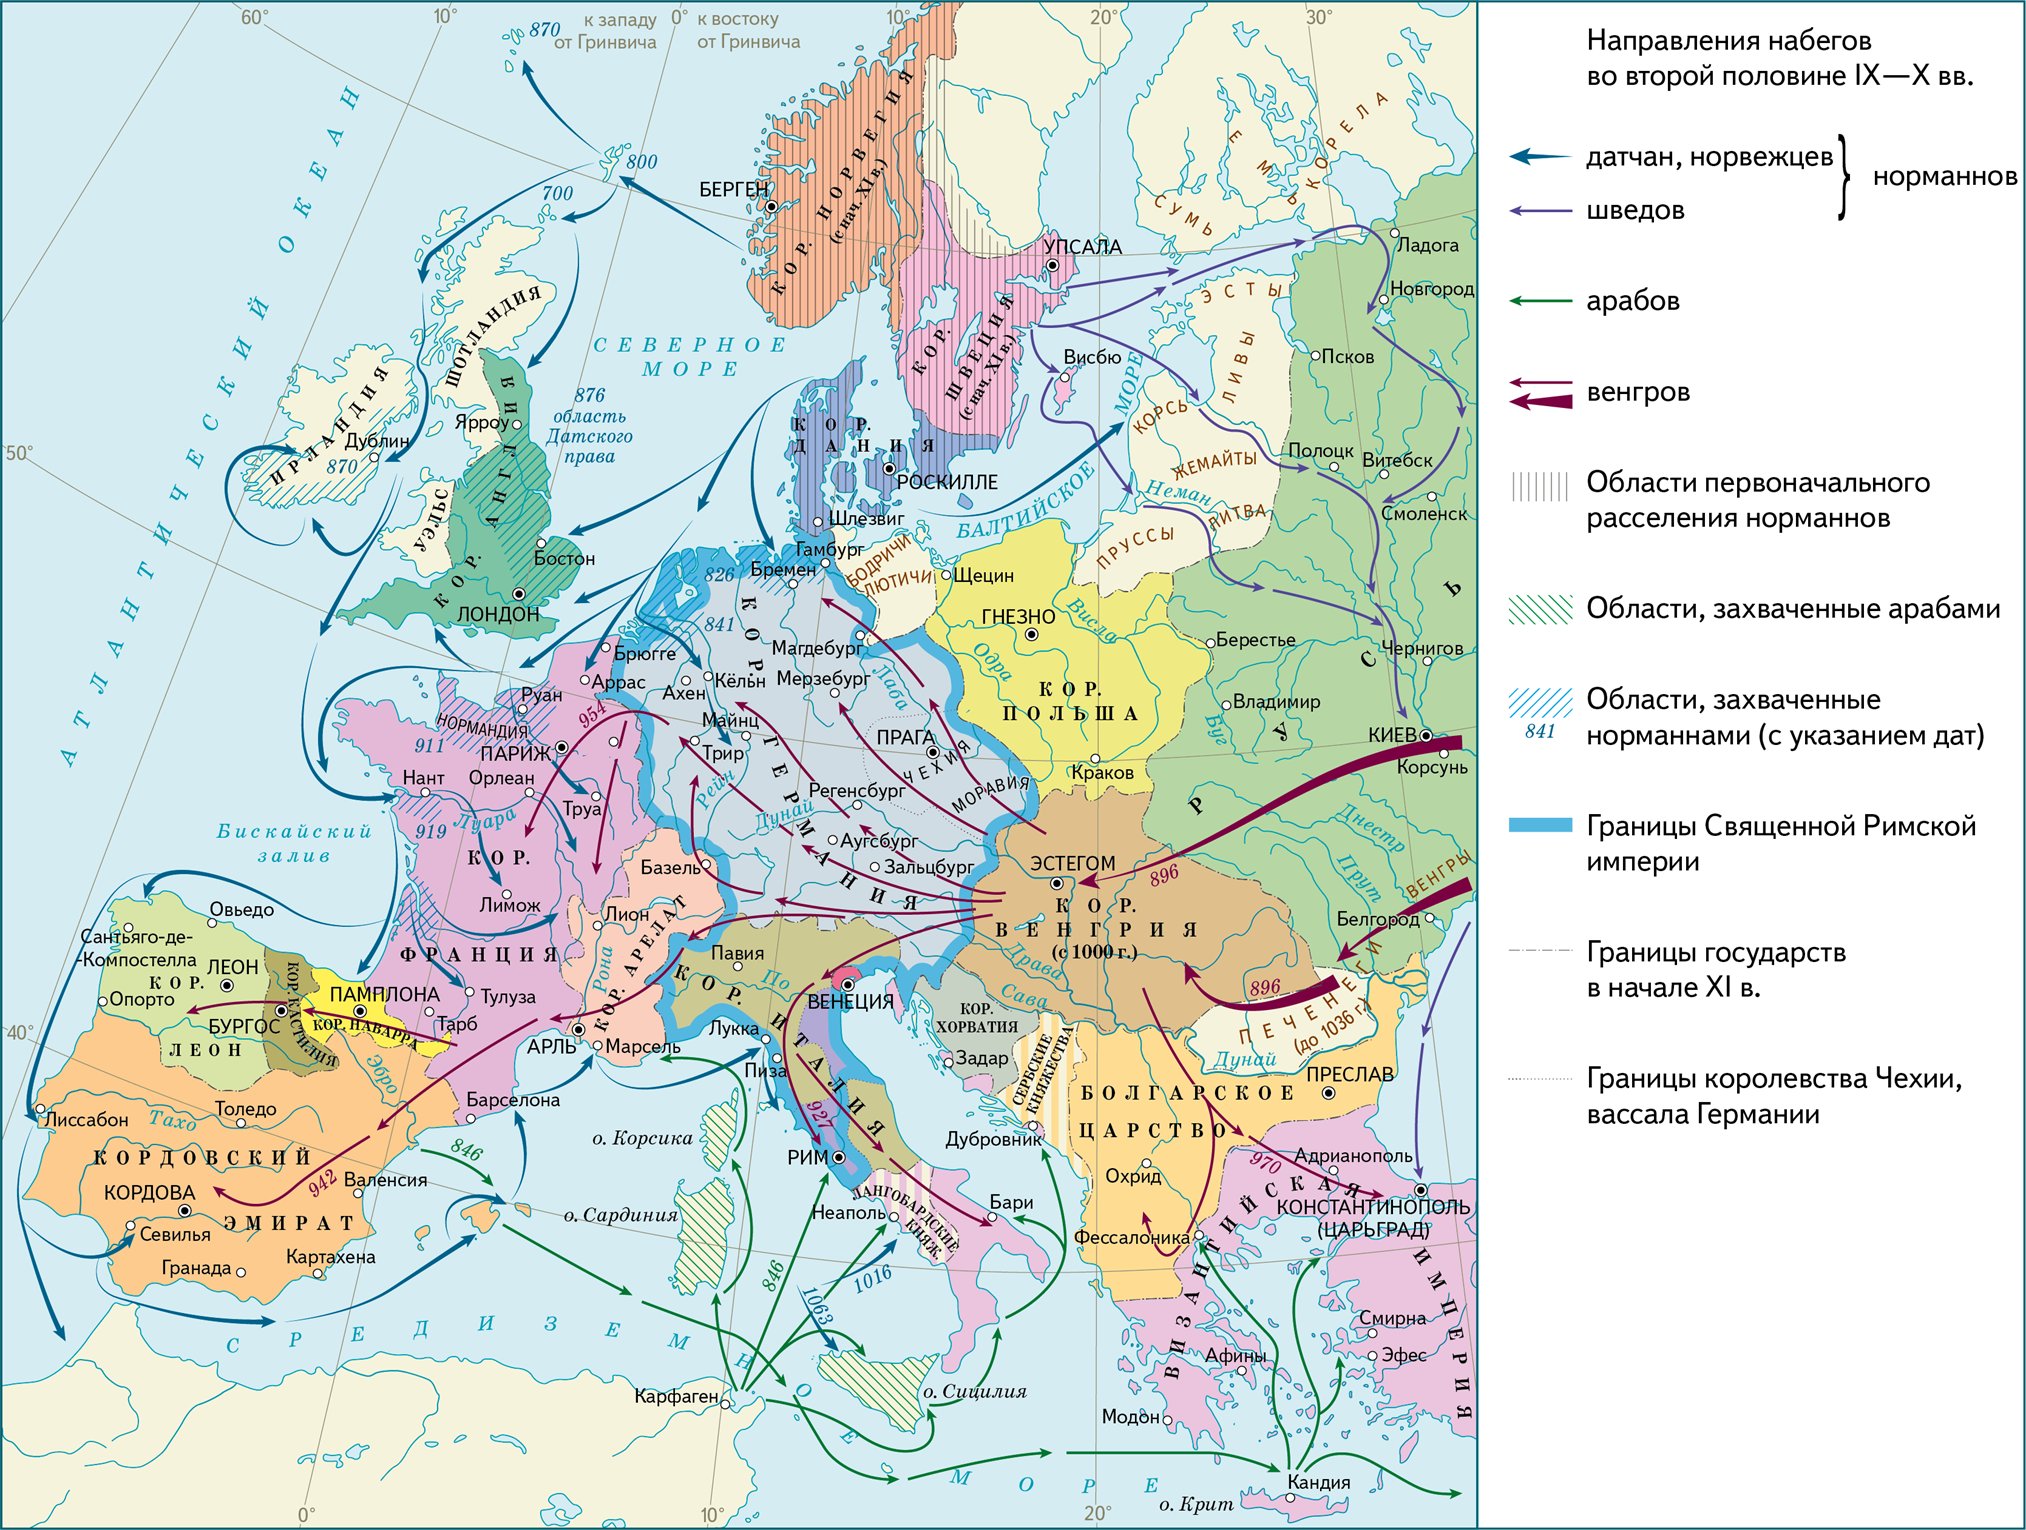 Феодальная раздробленность 9 11 века. Завоевание норманнов в Европе 9-11 века. Завоевания норманнов в Европе в 9-11 веках карта. Карта завоевания норманнов и венгров в Европе в 9-11 веках. Карта завоевания норманнов и венгров в Европе.